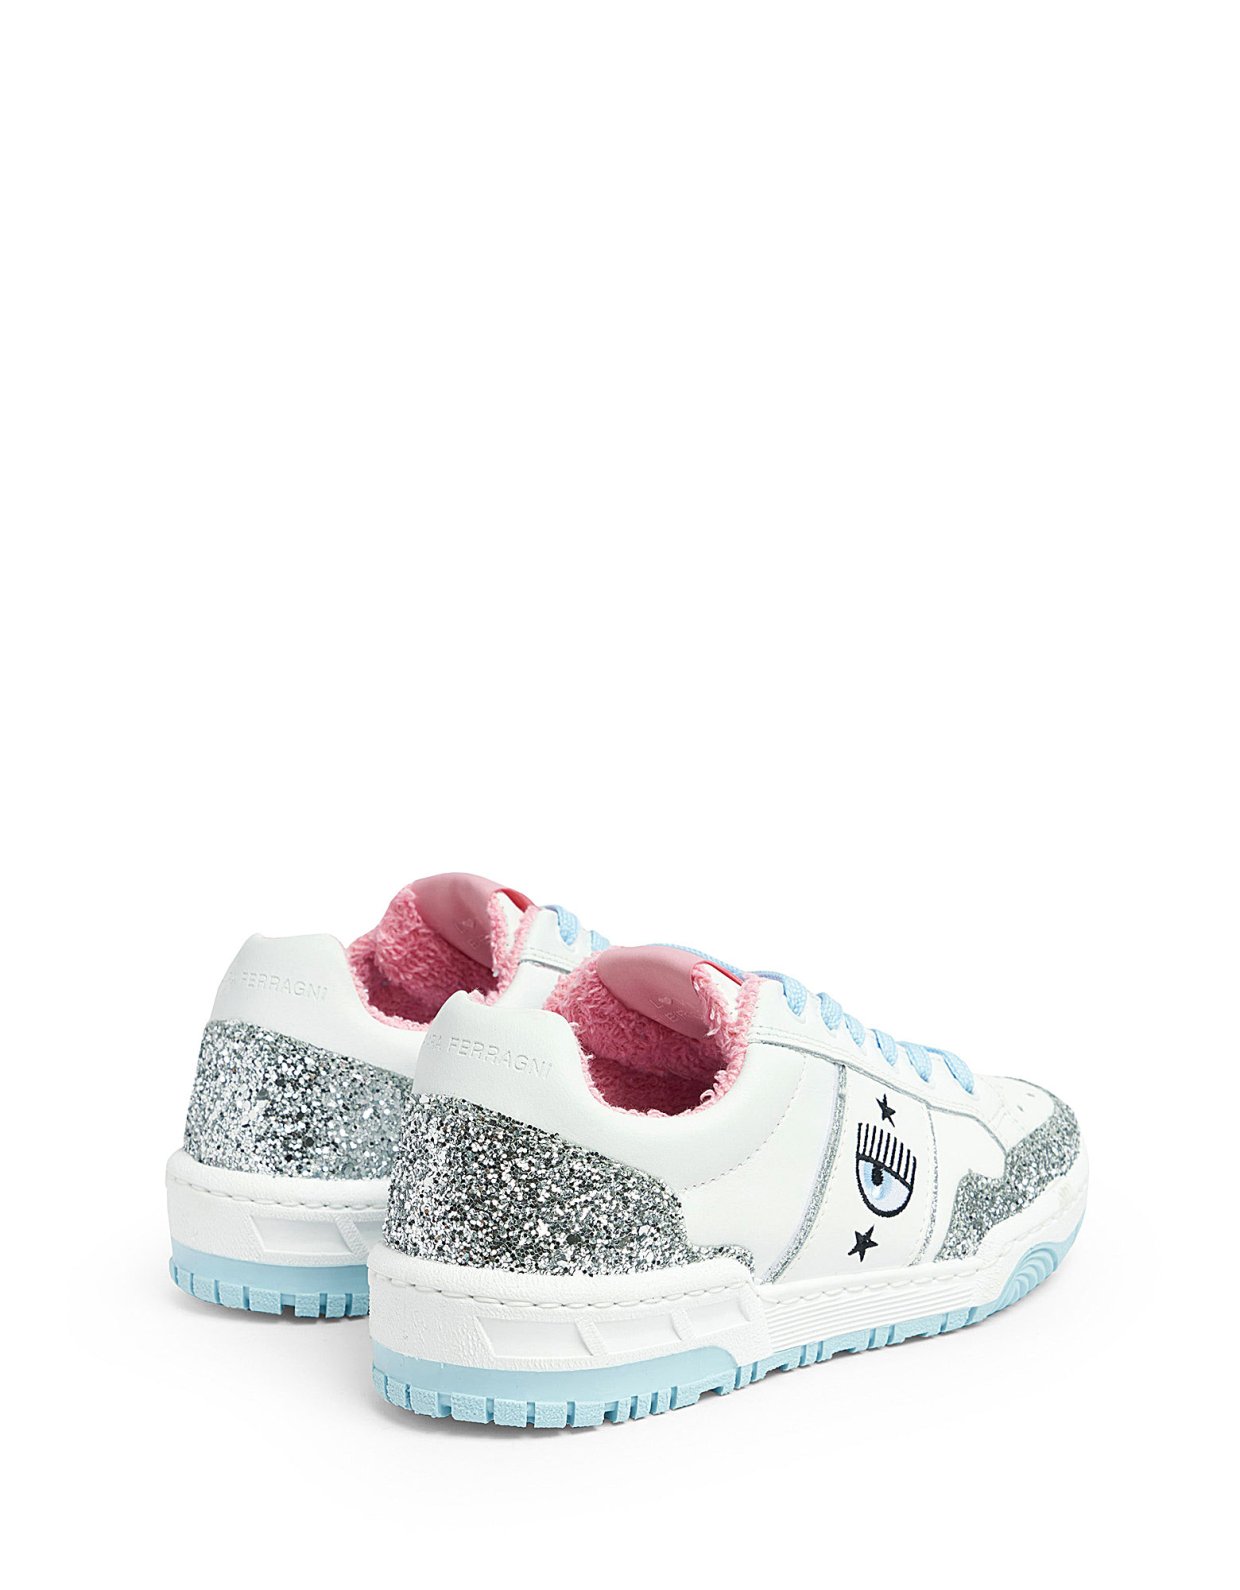 Chiara Ferragni CF1 Sneakers glitter silver-white